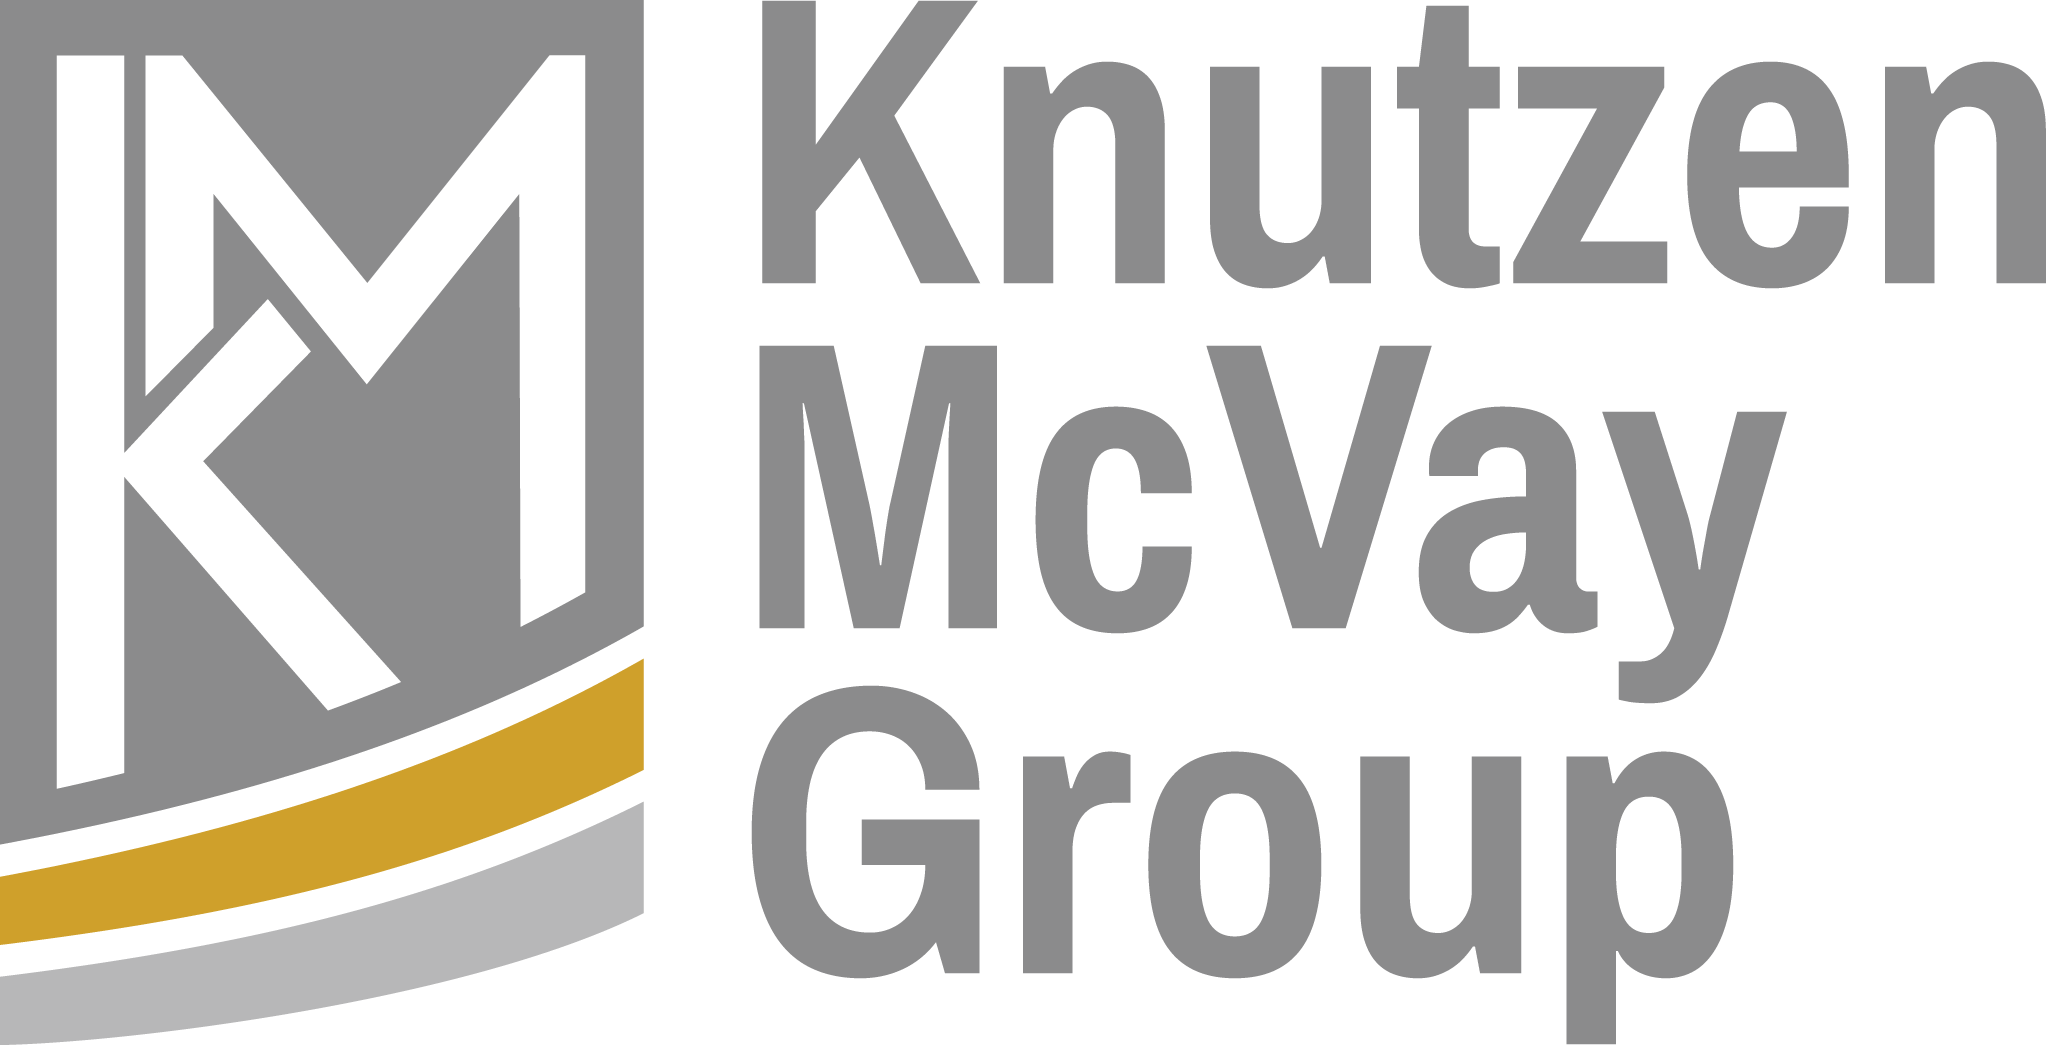 Knutzen McVay Group